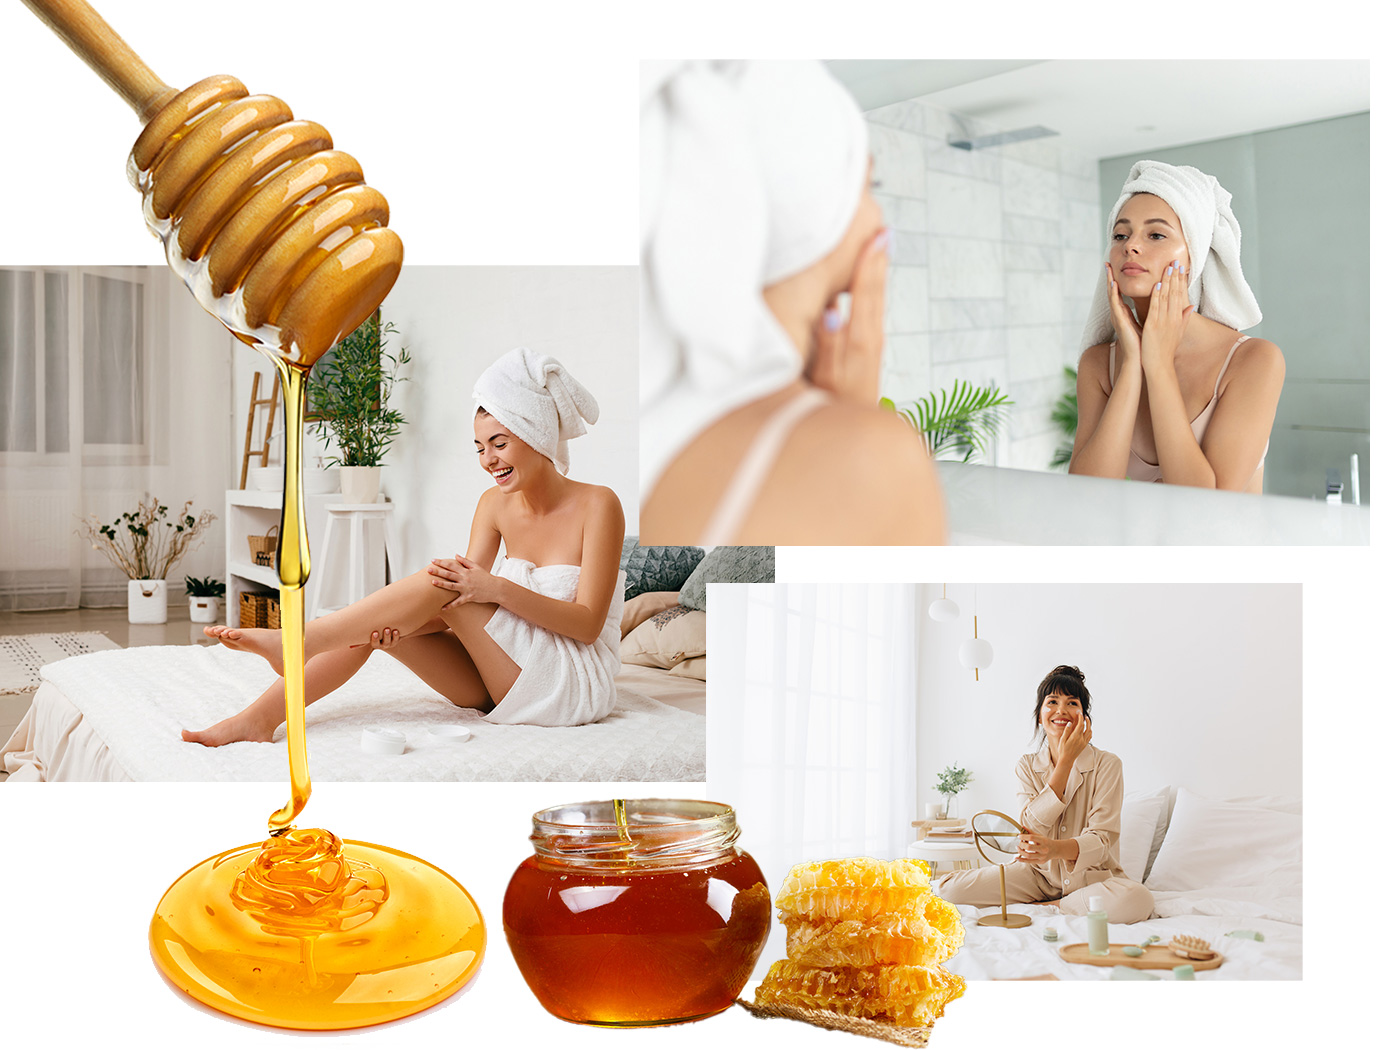 Μέλι: Το συστατικό που χαρίζει απαλότητα, ενυδάτωση, θρέψη και το πιο γλυκό άρωμα στο δέρμα